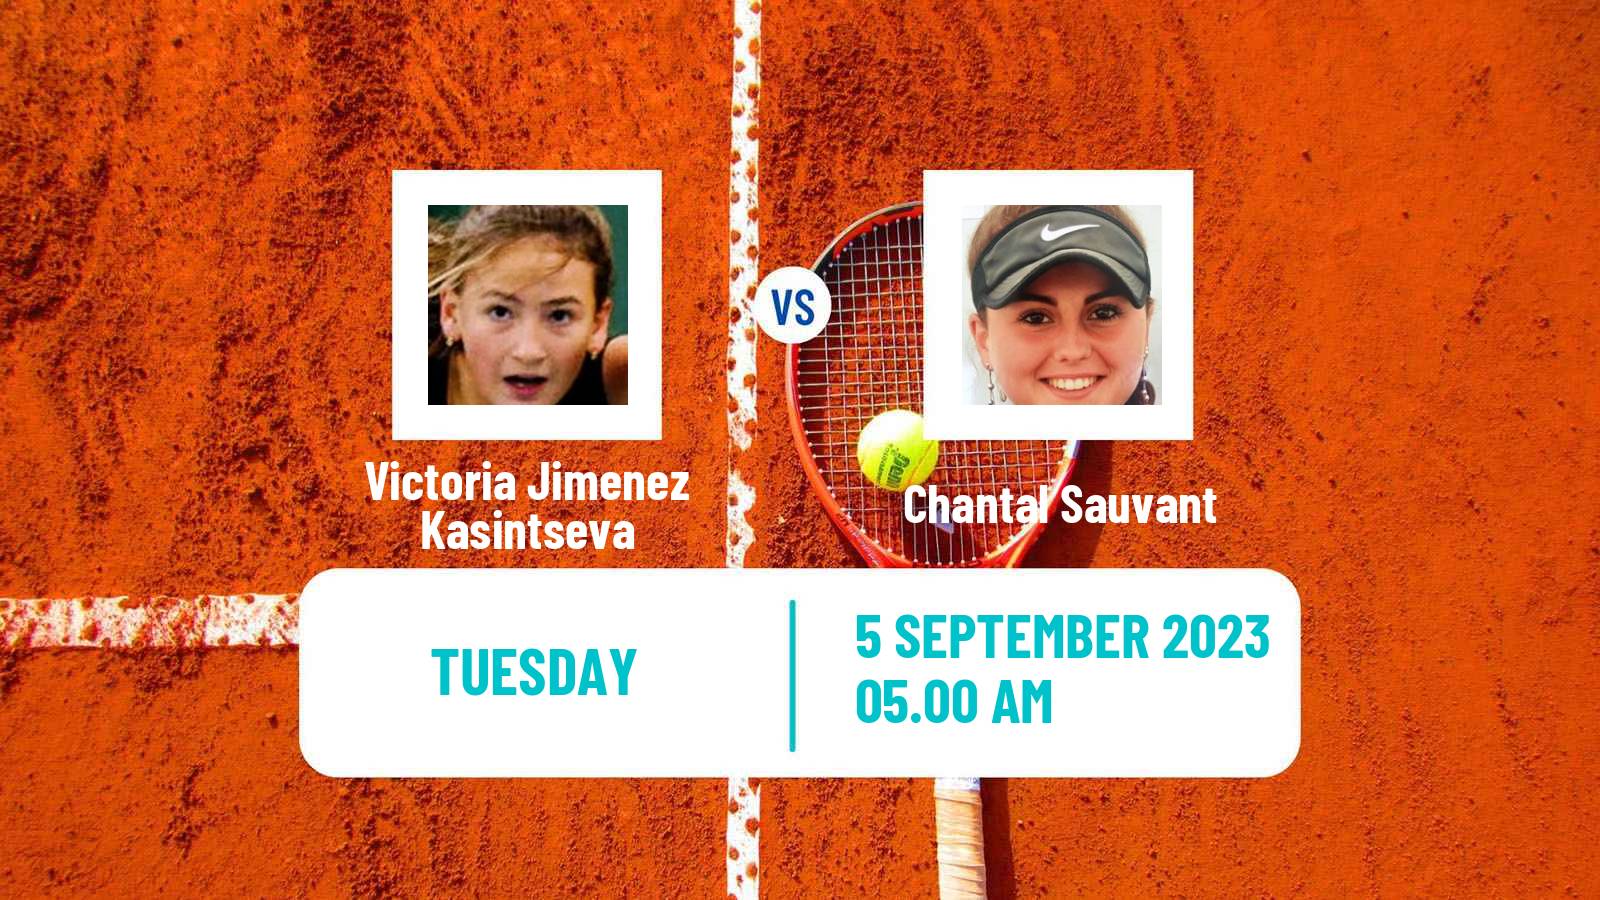 Tennis ITF W25 Zaragoza Women Victoria Jimenez Kasintseva - Chantal Sauvant